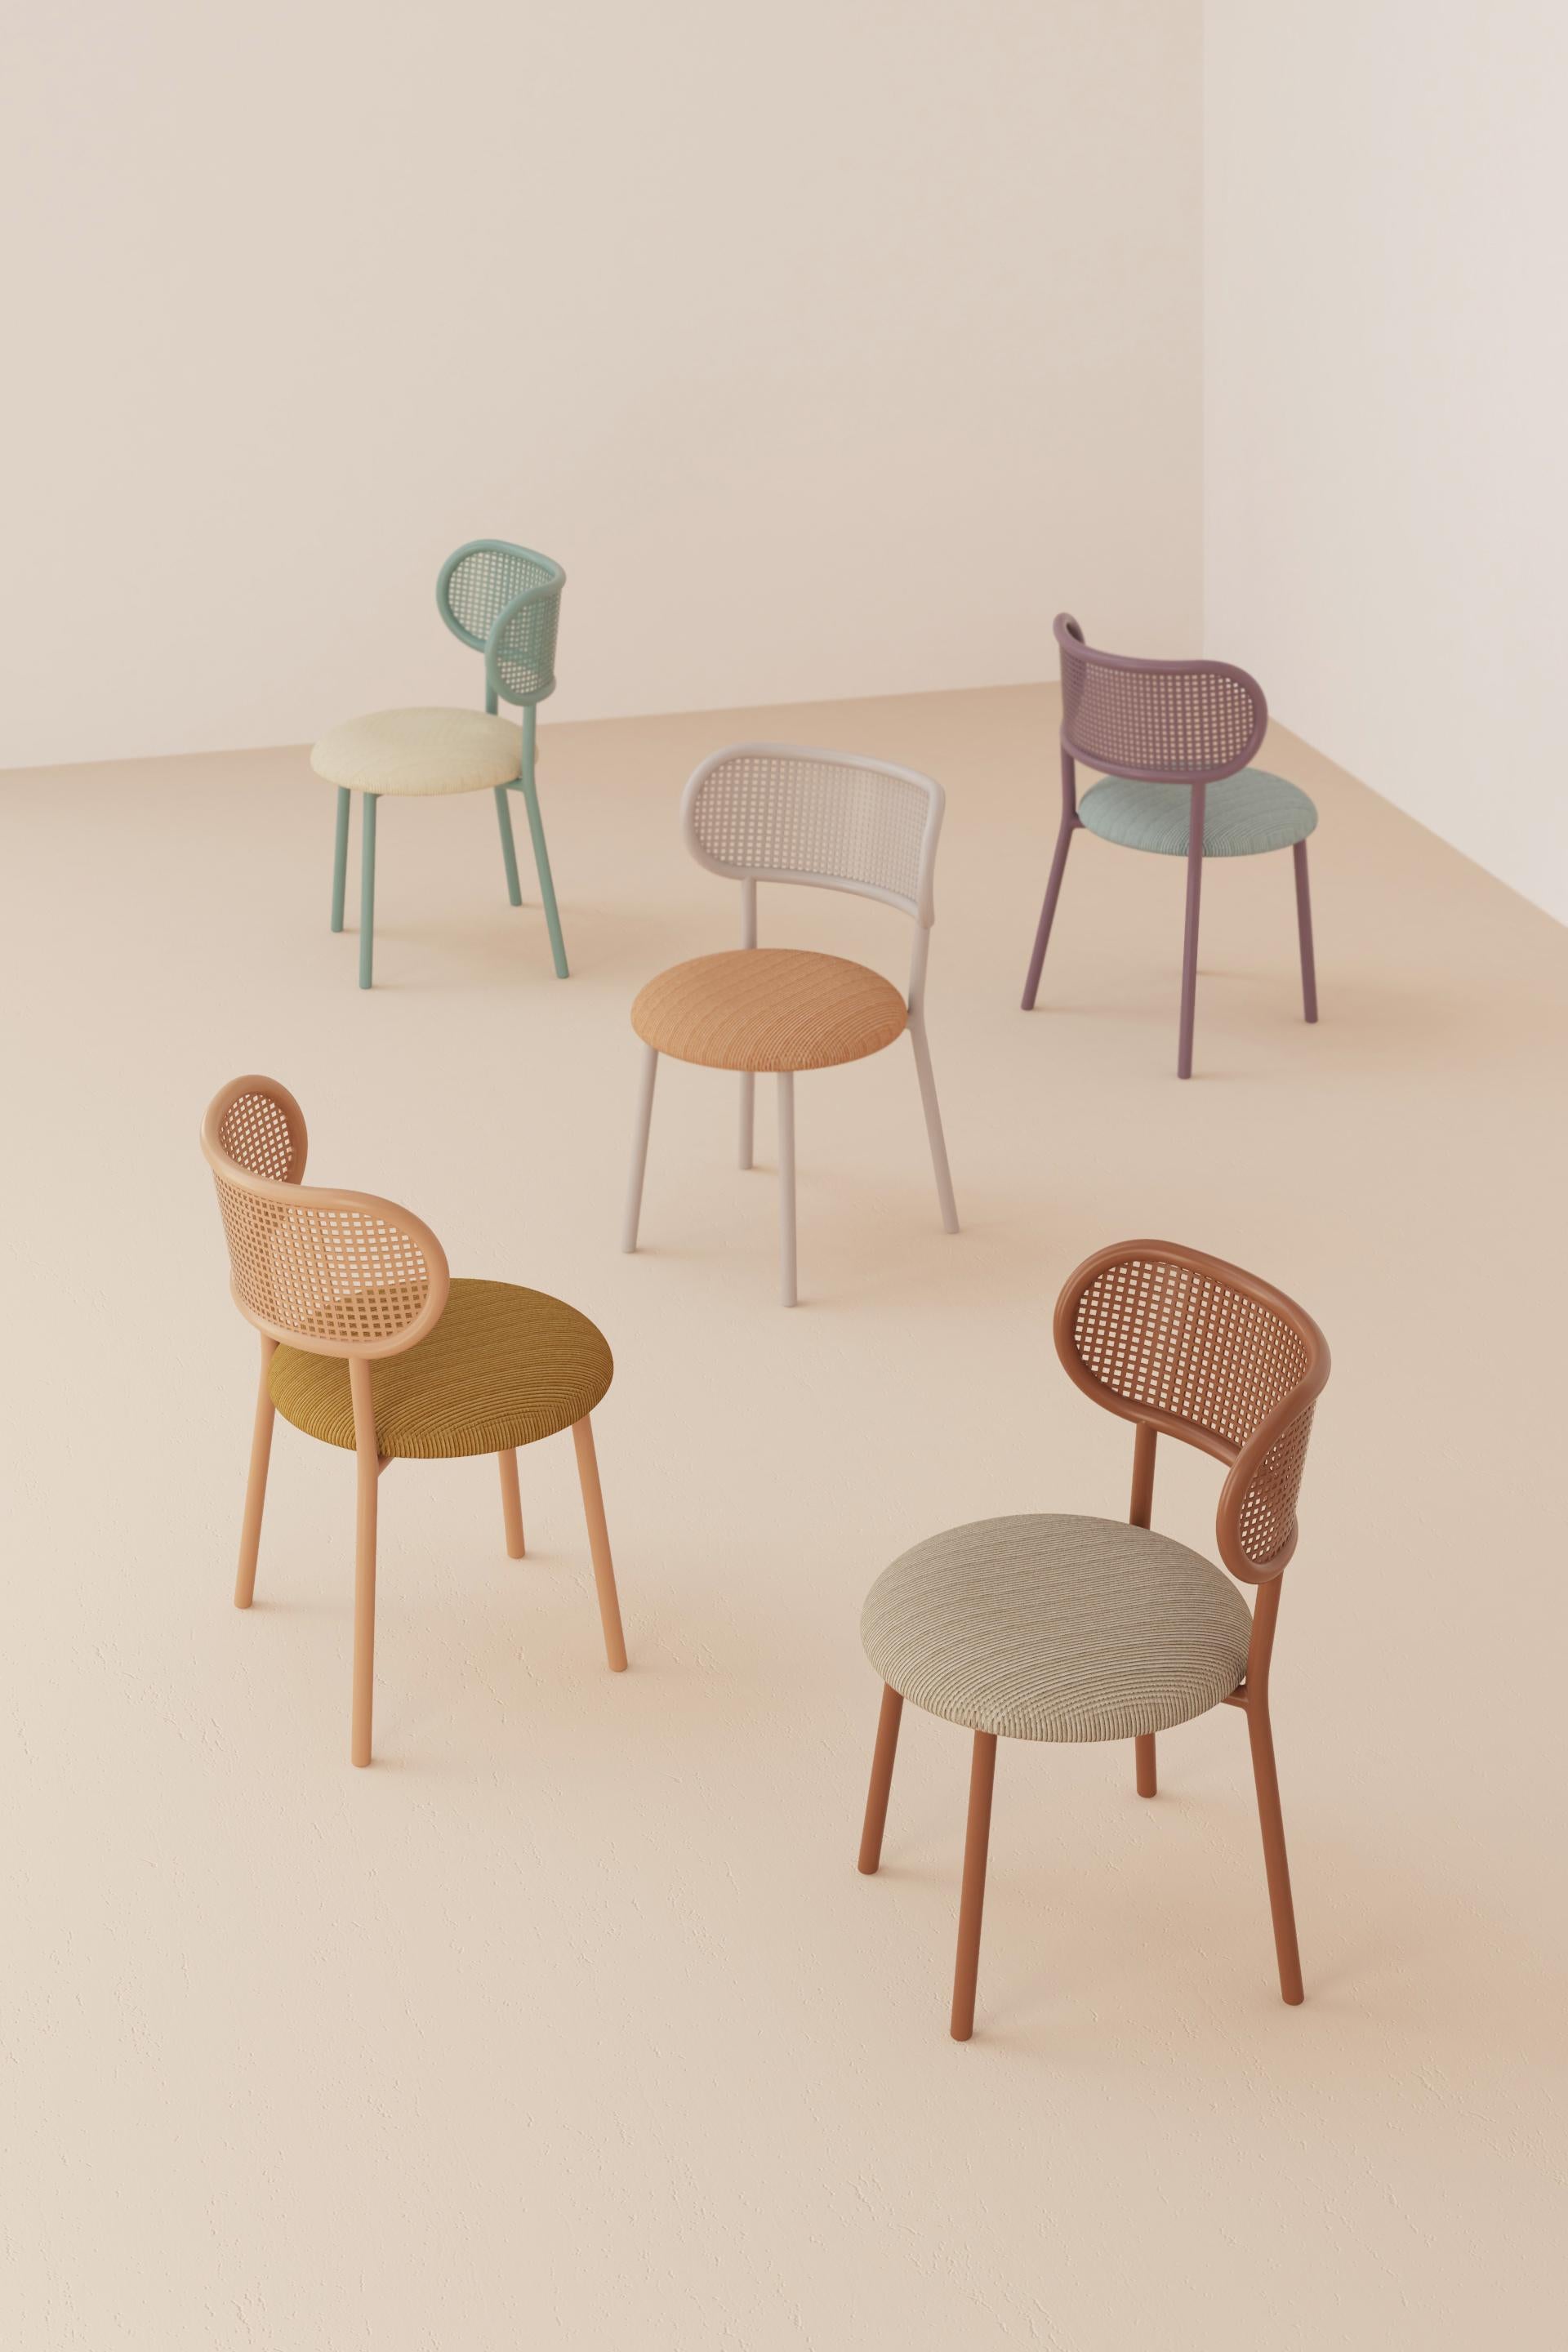 Der Stuhl Louise ist für modernes Arbeiten, Essen und Wohnen gedacht und kombiniert ein klares,
Die Struktur aus Stahl, die Rückenlehne aus perforiertem Stahl und die Polsterung ergeben einen mühelosen modernen Klassiker, der perfekt proportioniert